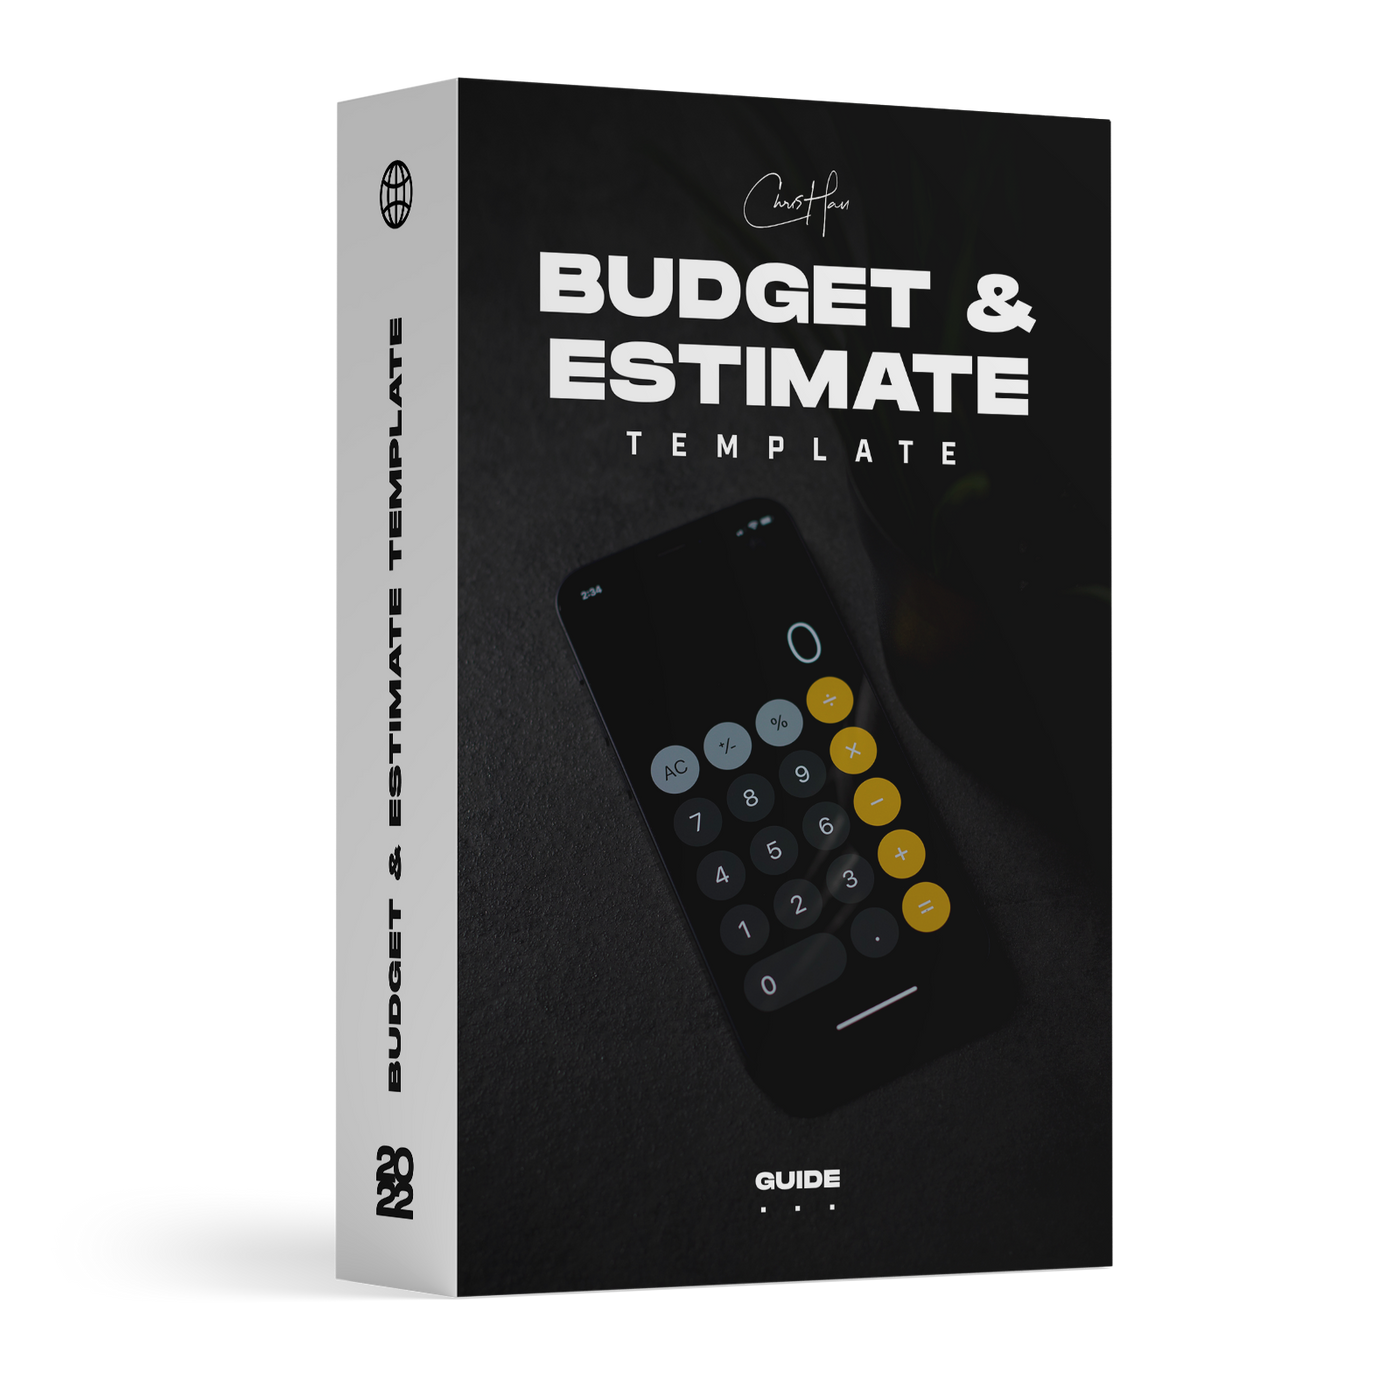 Budget & Estimate Template